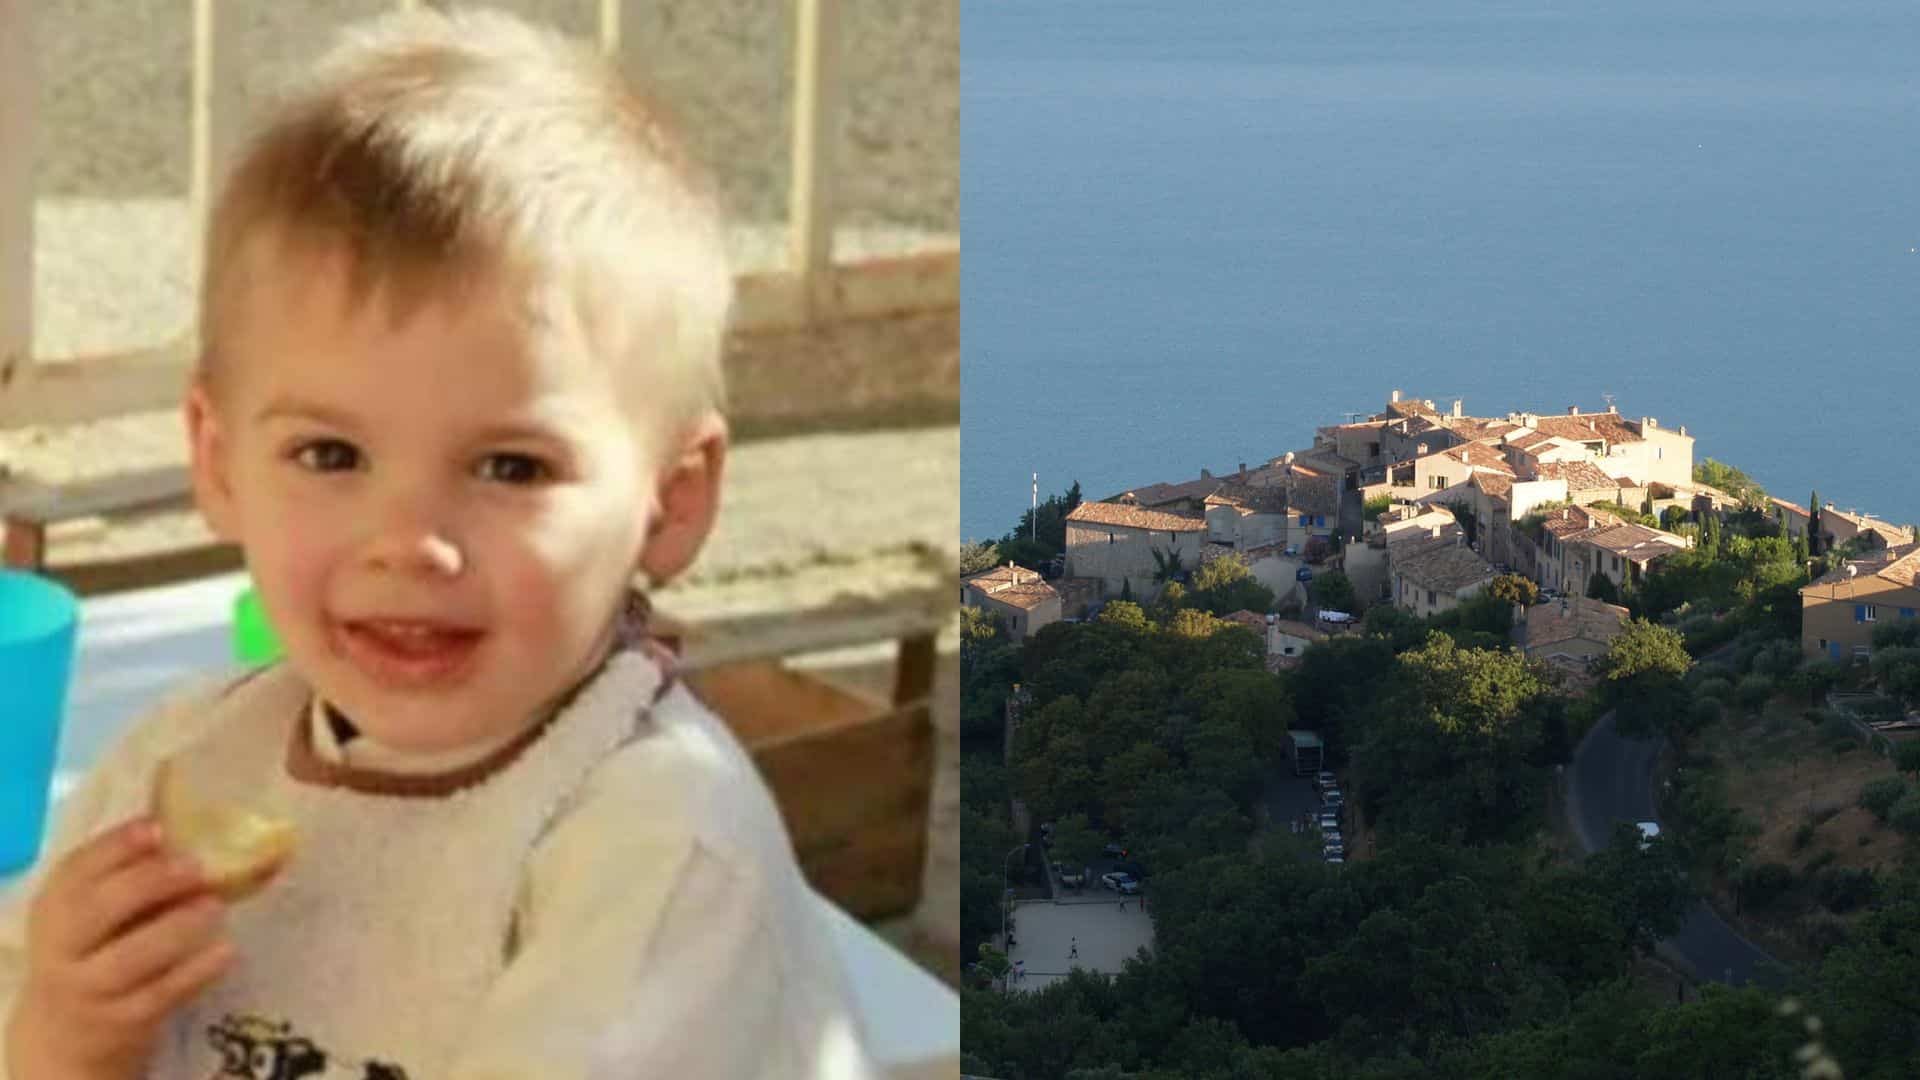 Disparition d’Émile : un enfant de 6 ans perd la vie à quelques kilomètres du Vernet